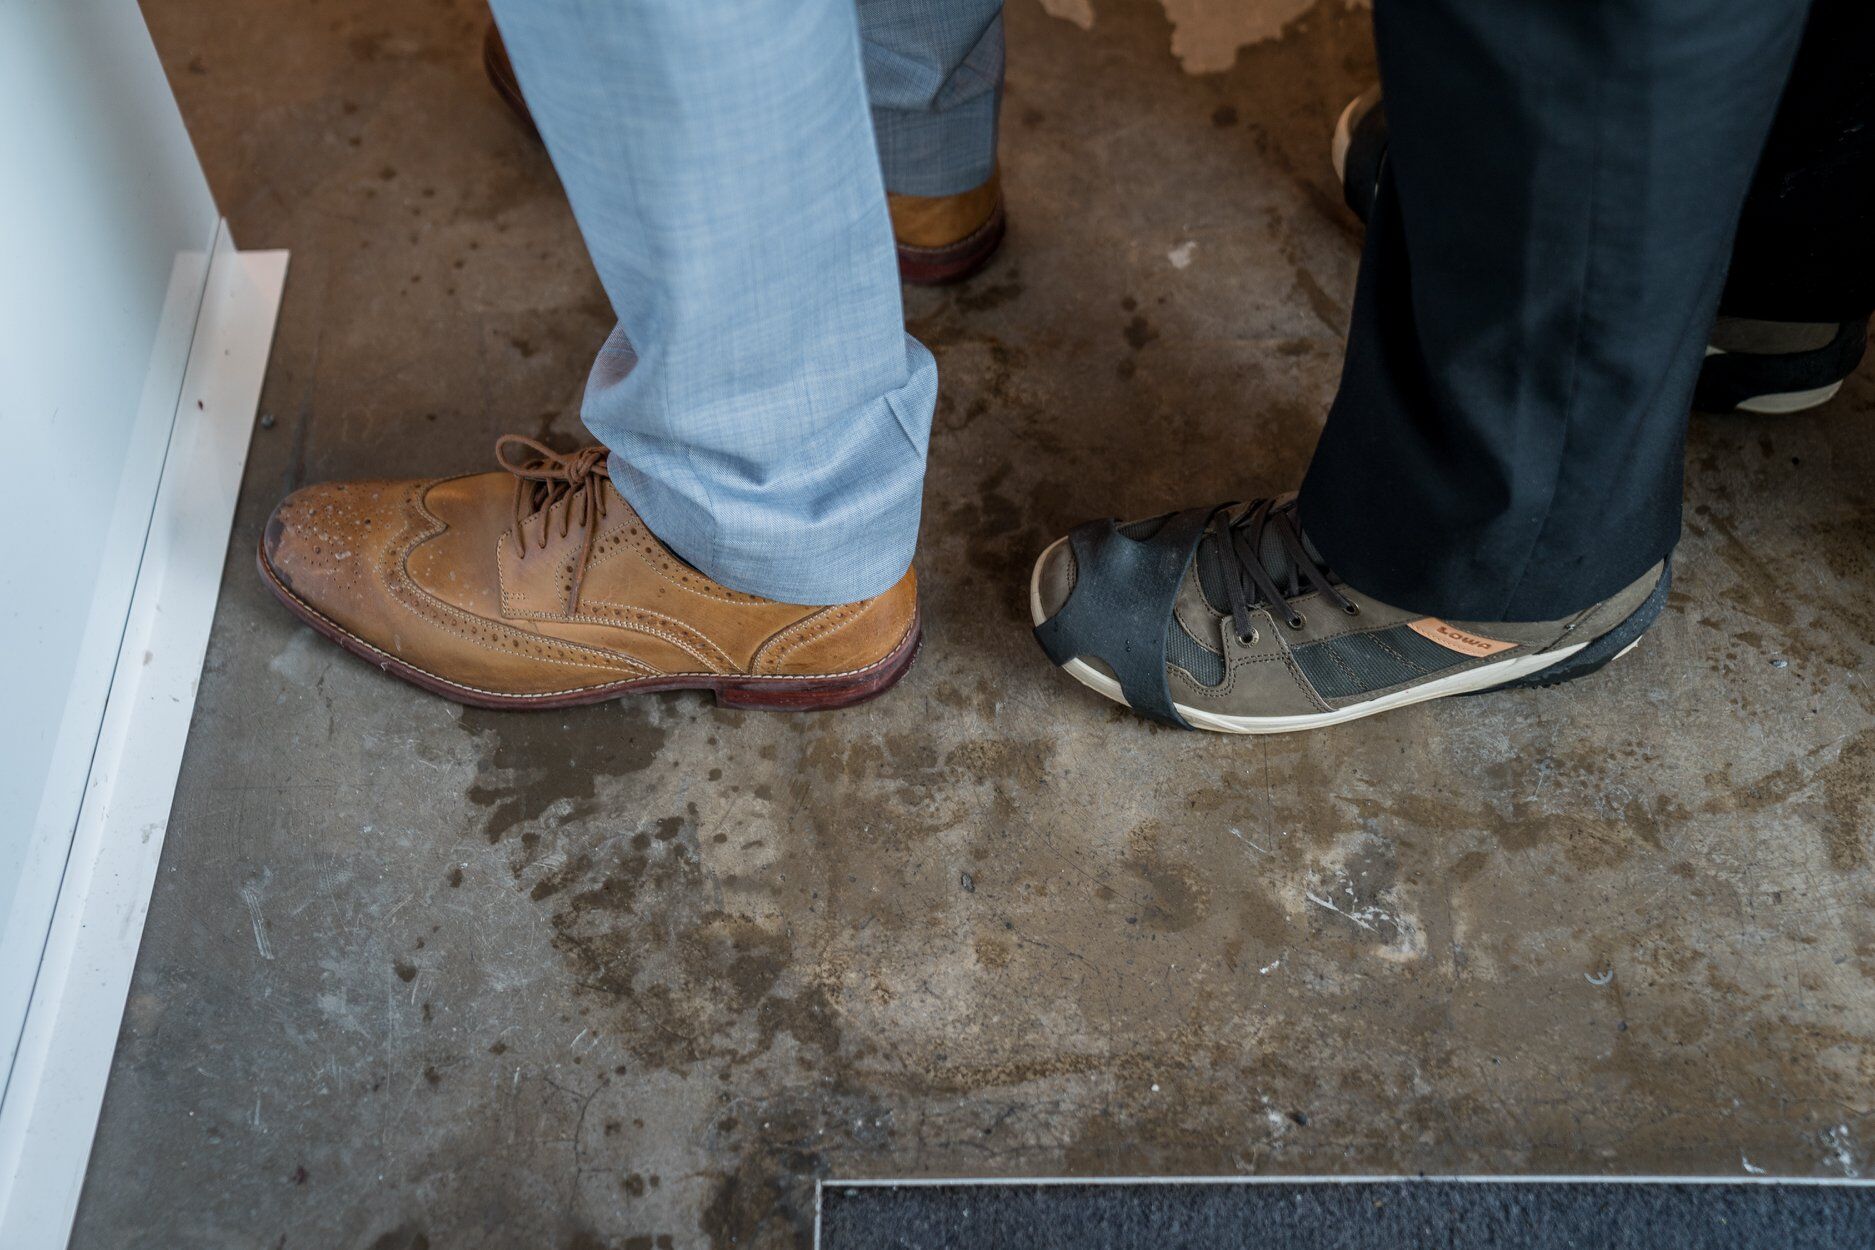 "Меховые носочки с совами?" Сеть рассмешила "деловая мода" в Давосе. Фотофакт